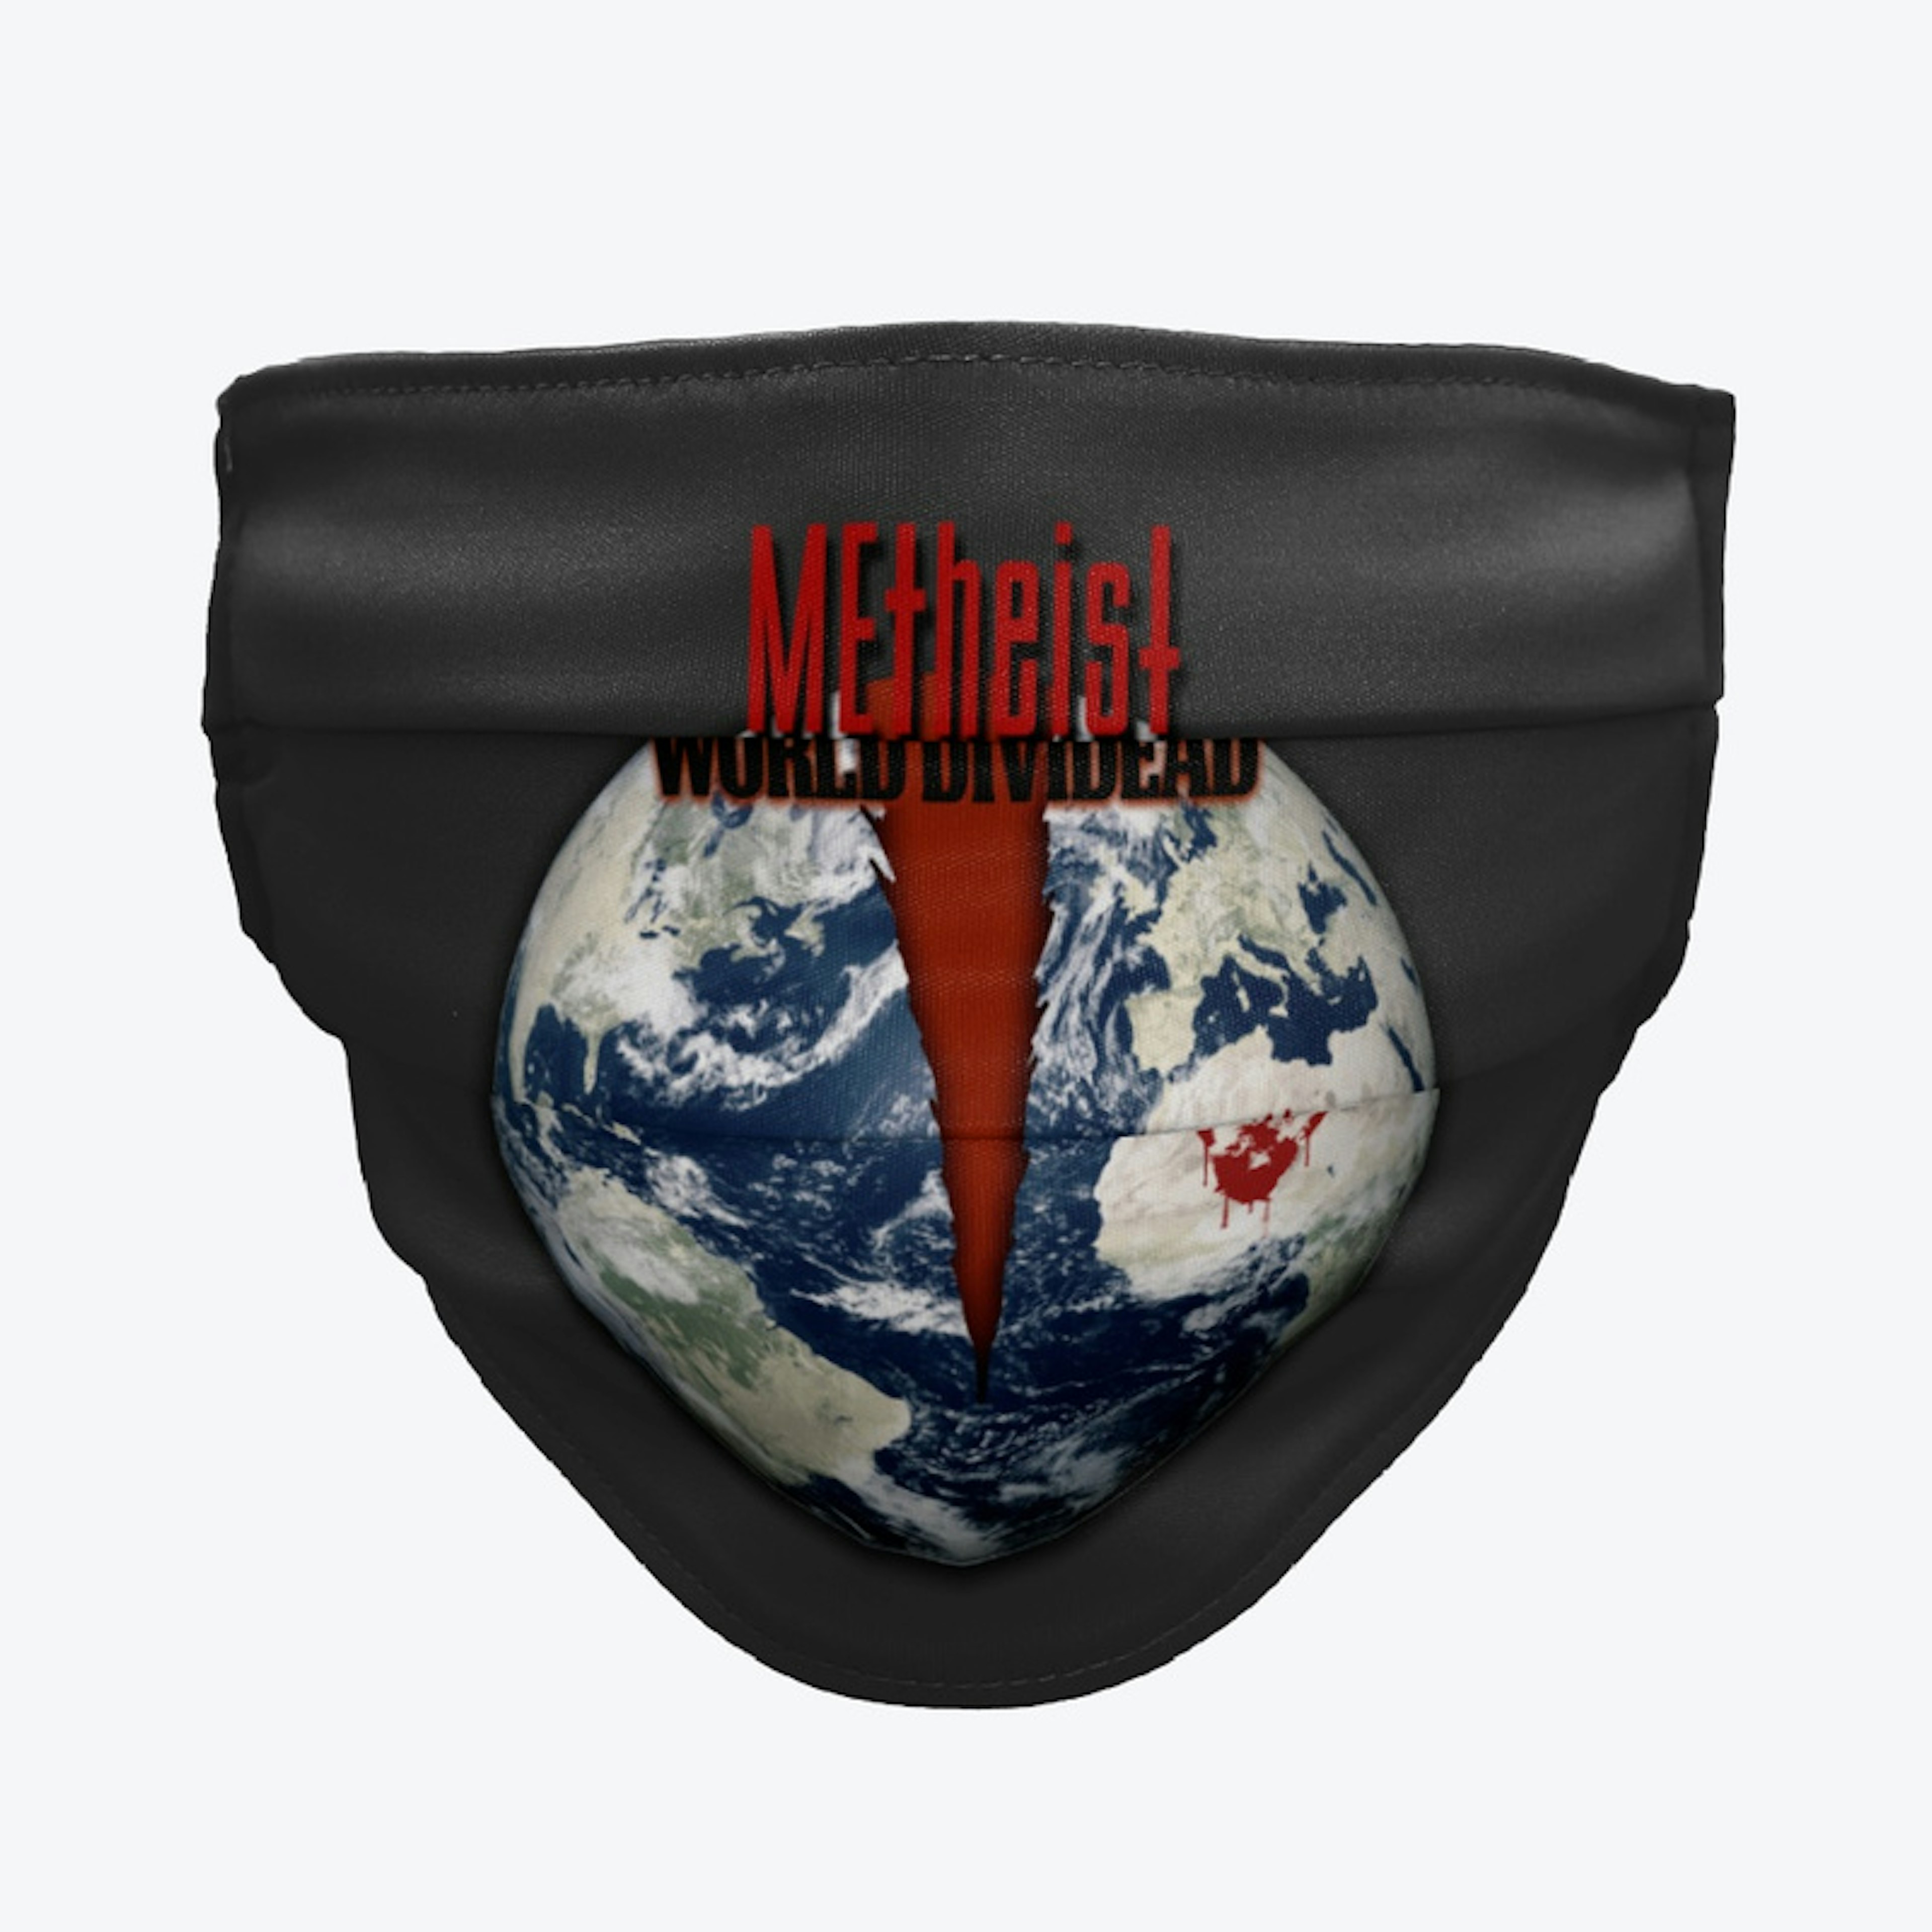 MEtheist - World DiviDead Mask